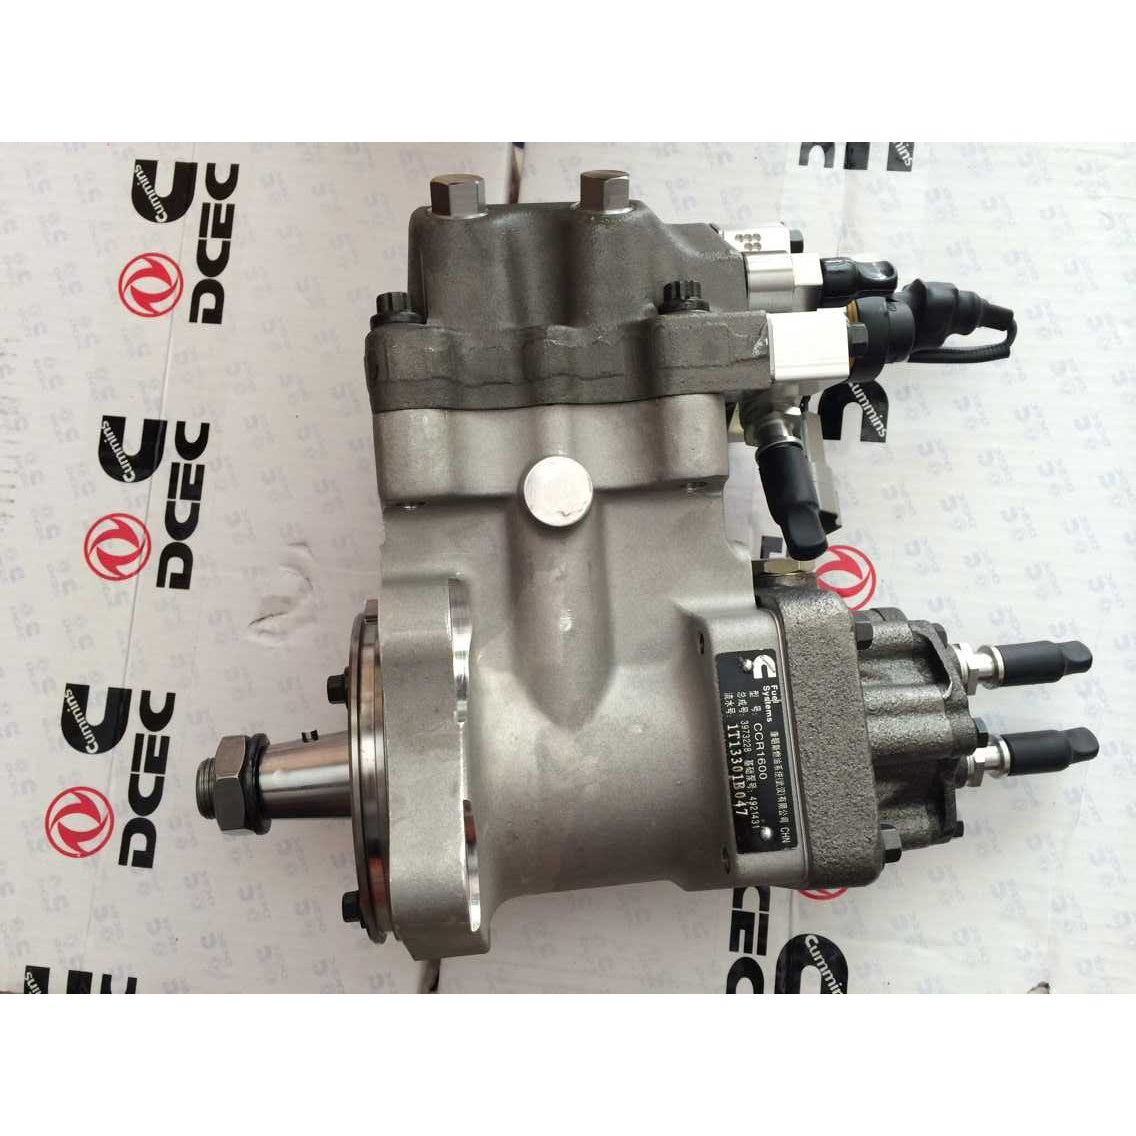 Cummins QSC8.3 Diesel Engine Part High Pressure Fuel Injection Pump 4954200 4921431 3973228